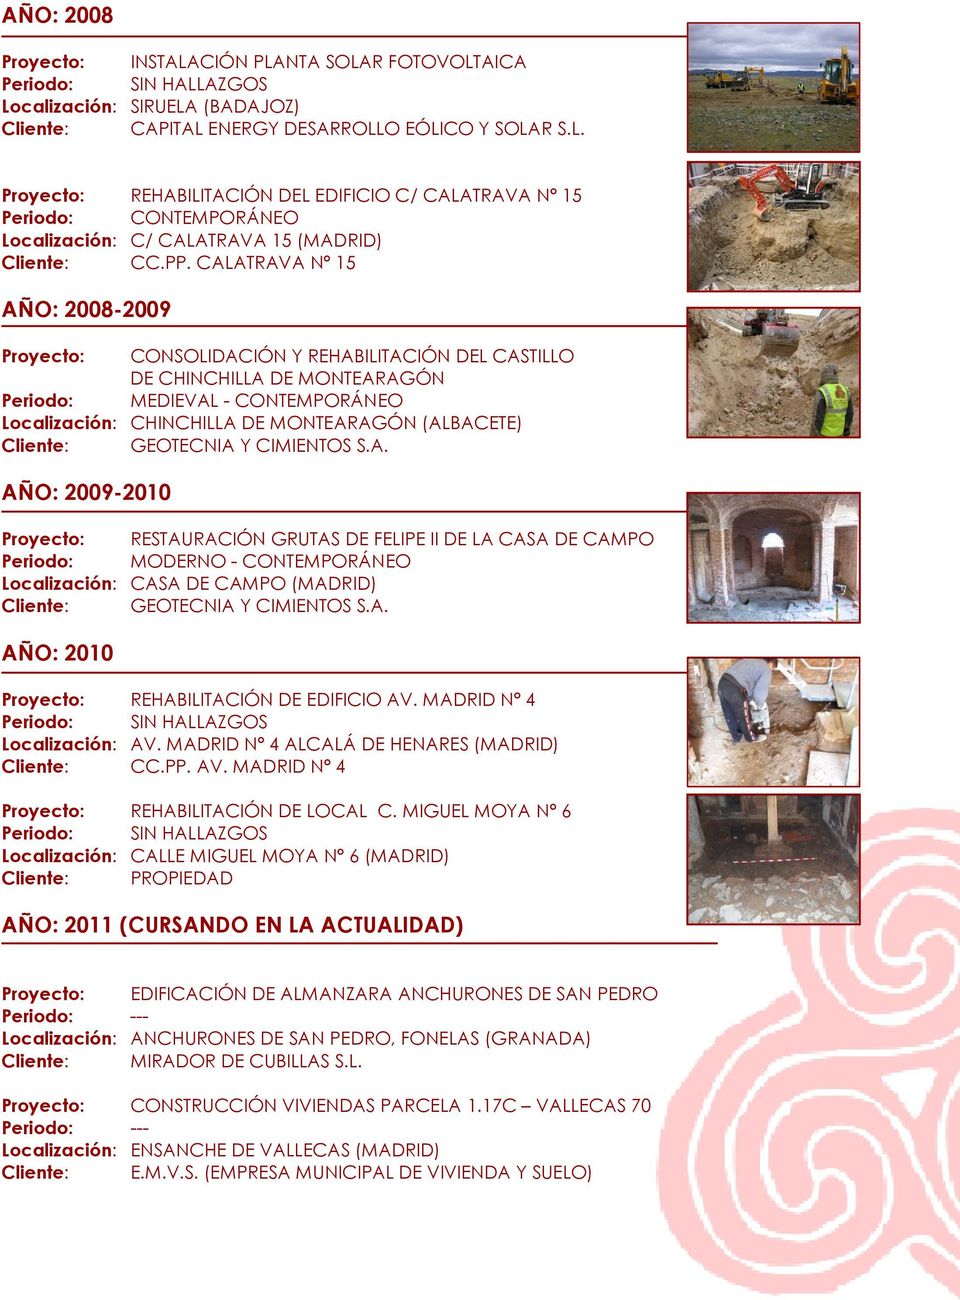 GEOTECNIA Y CIMIENTOS S.A. AÑO: 2009-2010 Proyecto: RESTAURACIÓN GRUTAS DE FELIPE II DE LA CASA DE CAMPO Periodo: MODERNO - CONTEMPORÁNEO Localización: CASA DE CAMPO (MADRID) Cliente: GEOTECNIA Y CIMIENTOS S.